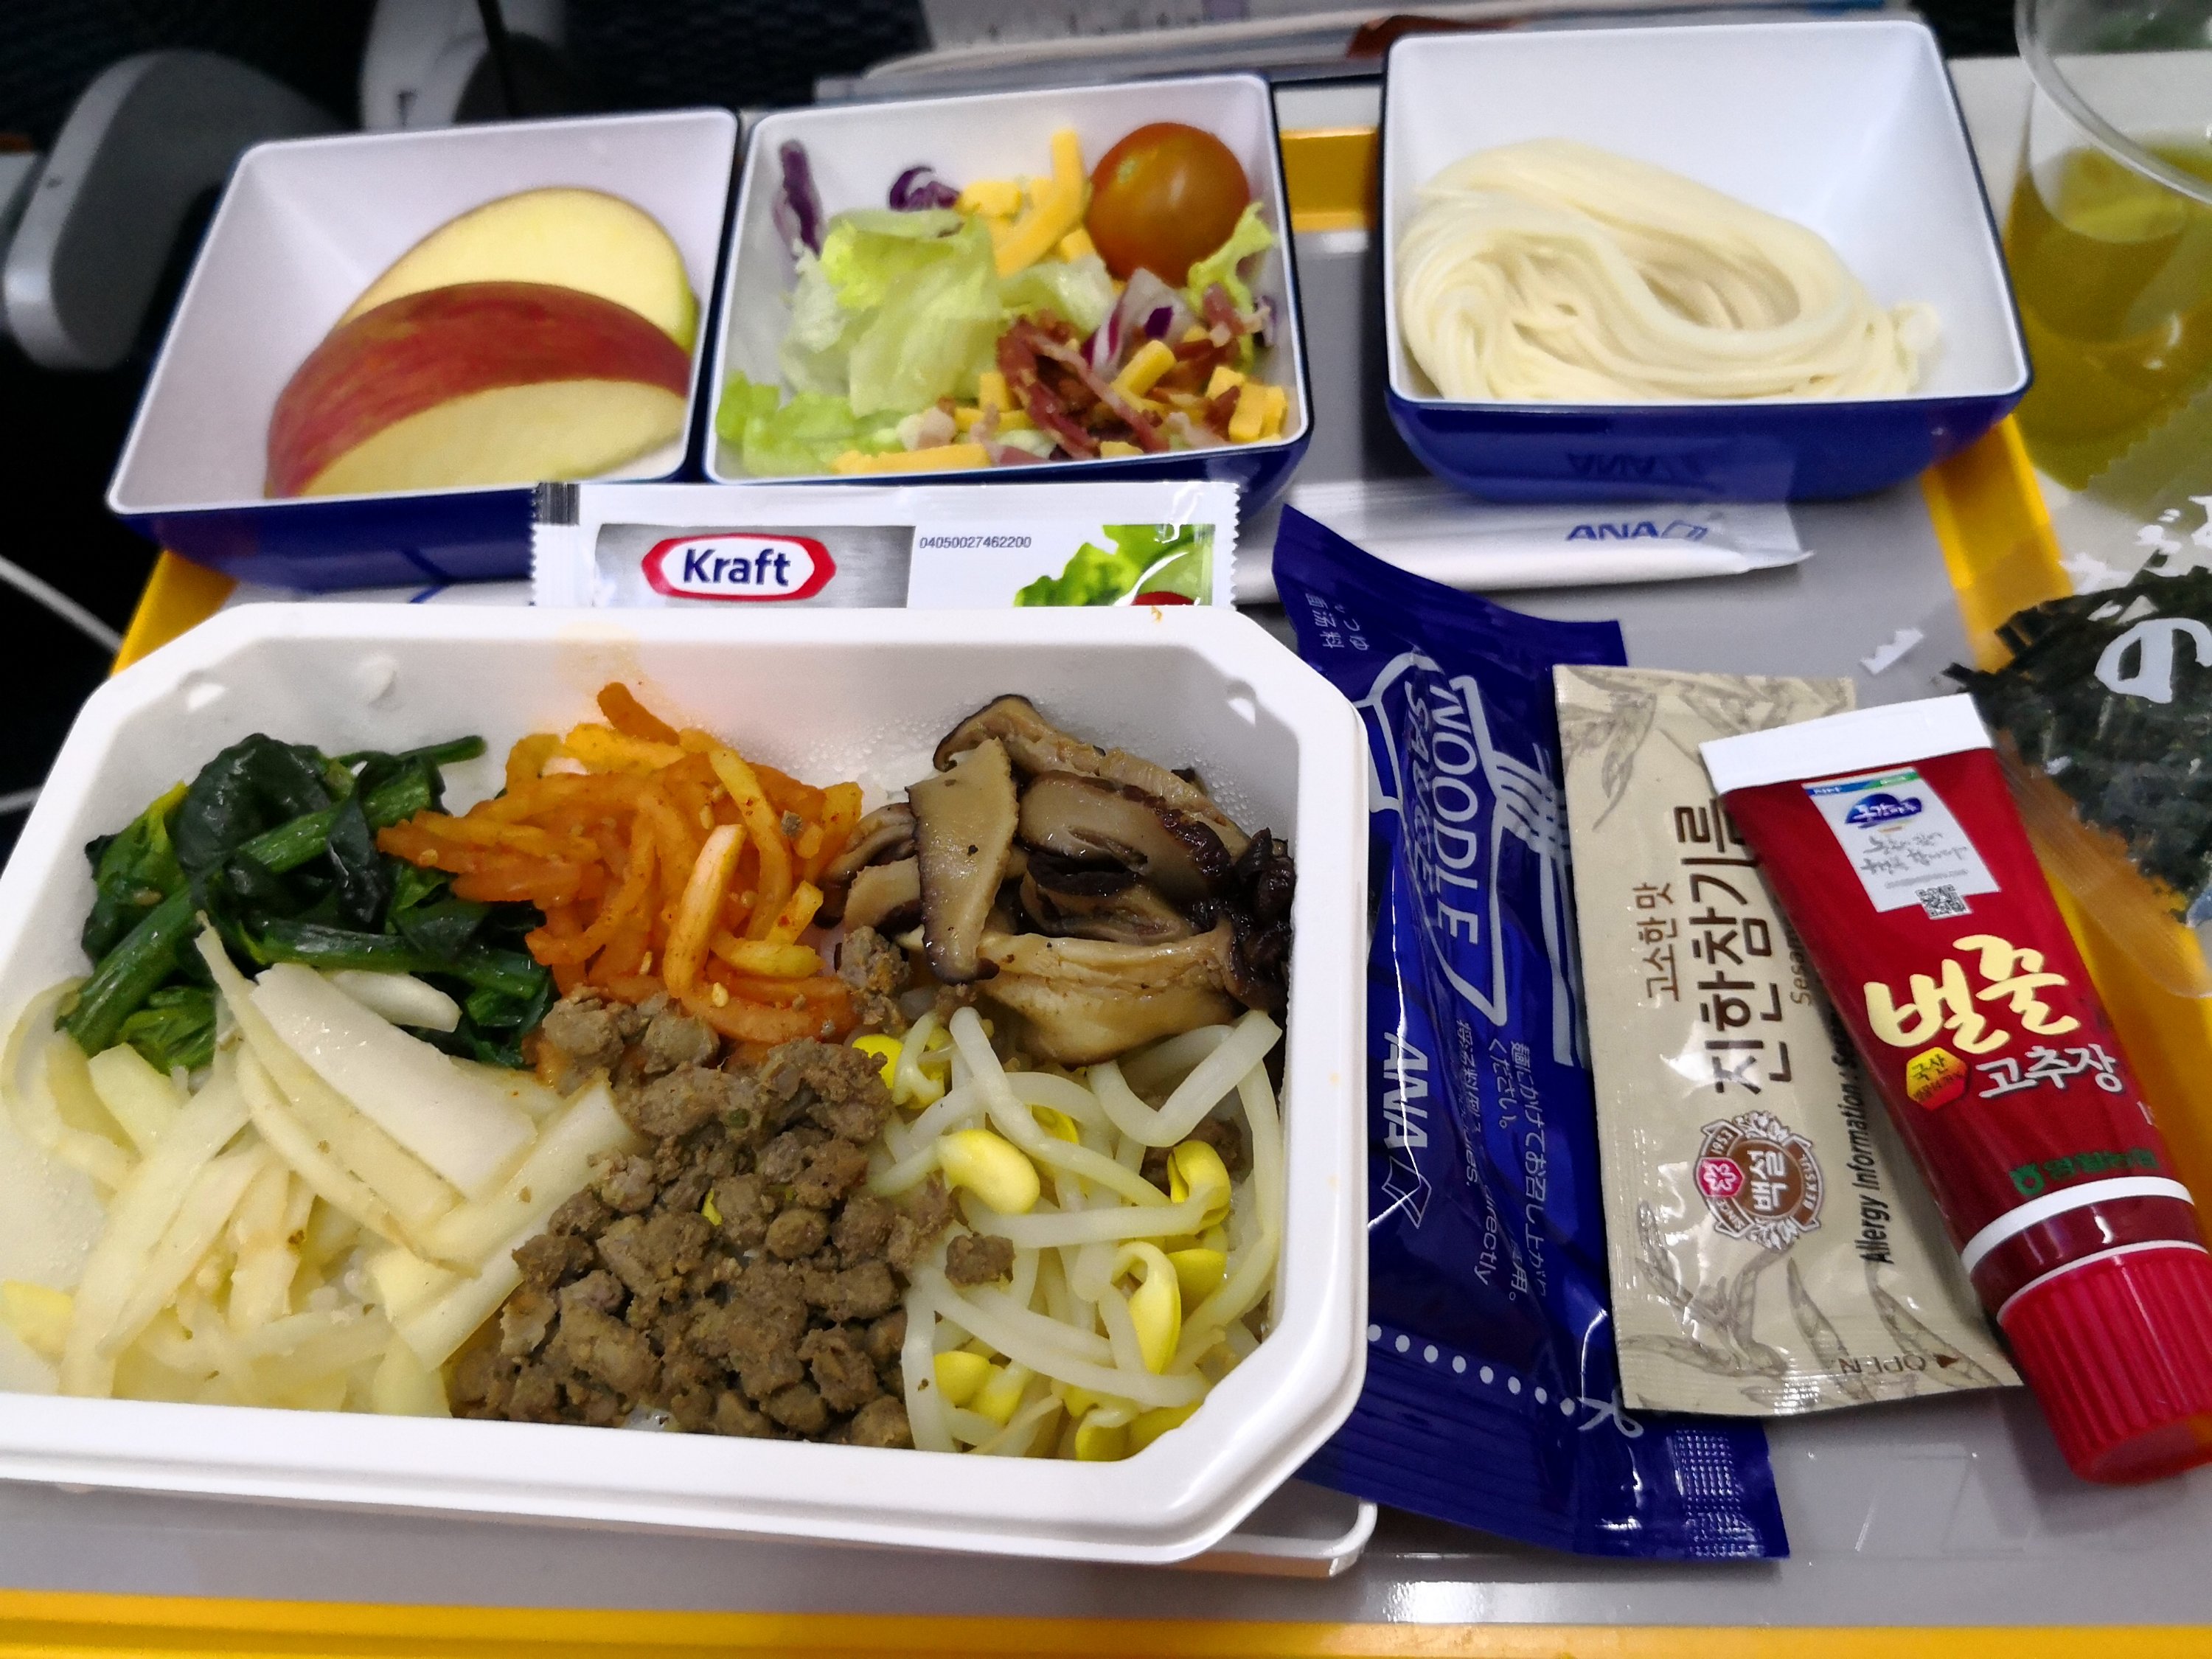 羽田ー韓国金浦空港 Ana搭乗記 機内食レポート 節約プレミアムな旅行ブログ